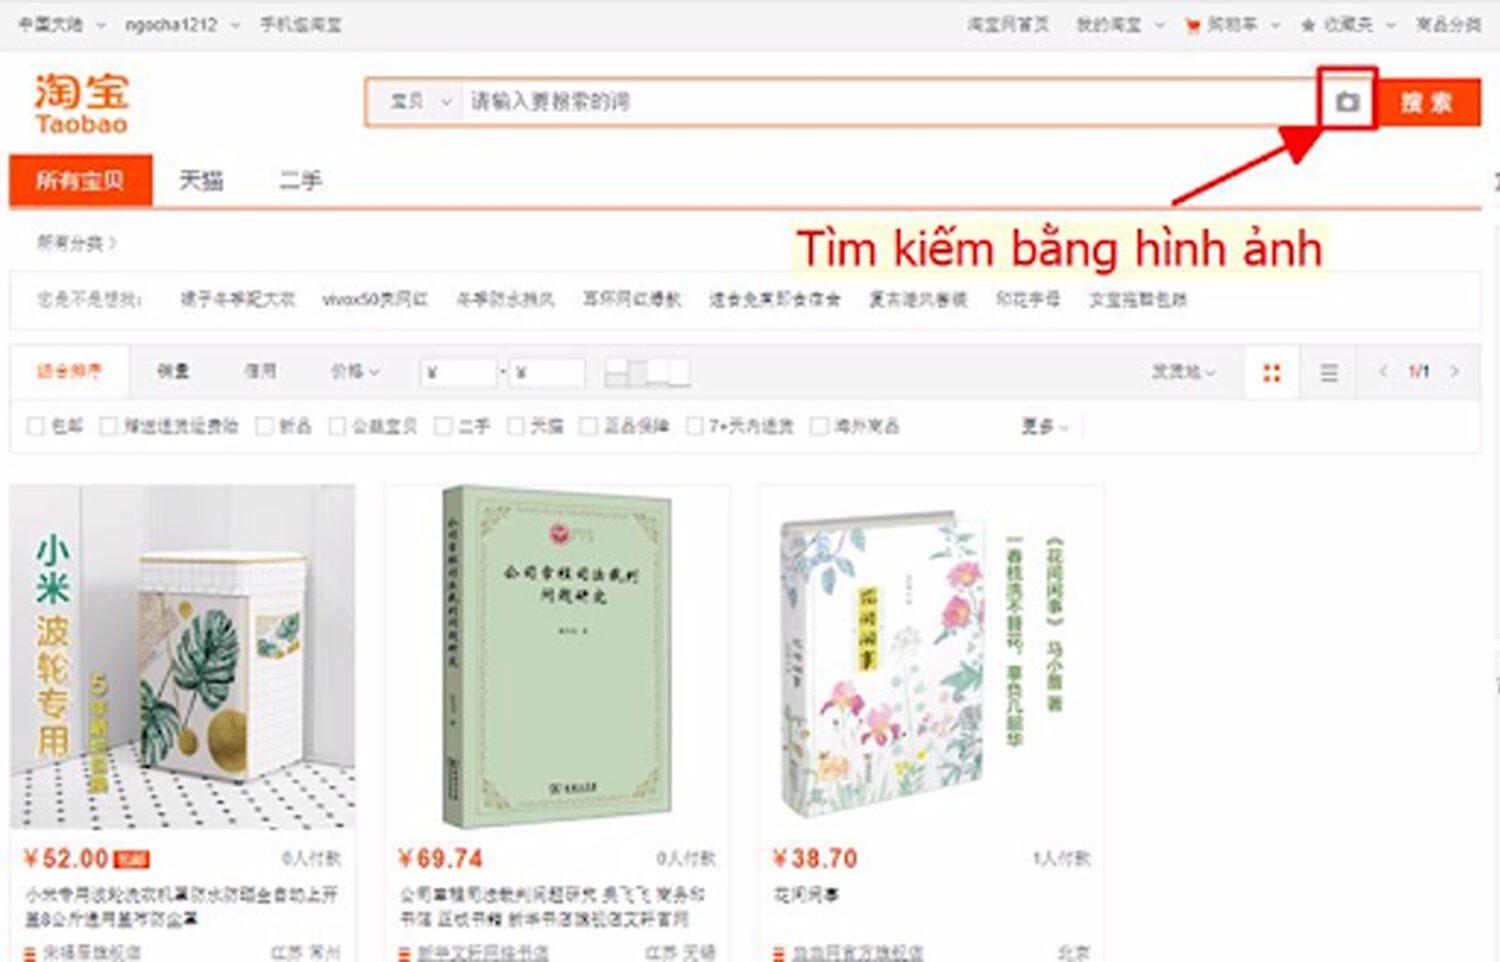 Tìm kiếm sản phẩm bằng hình ảnh trên Taobao